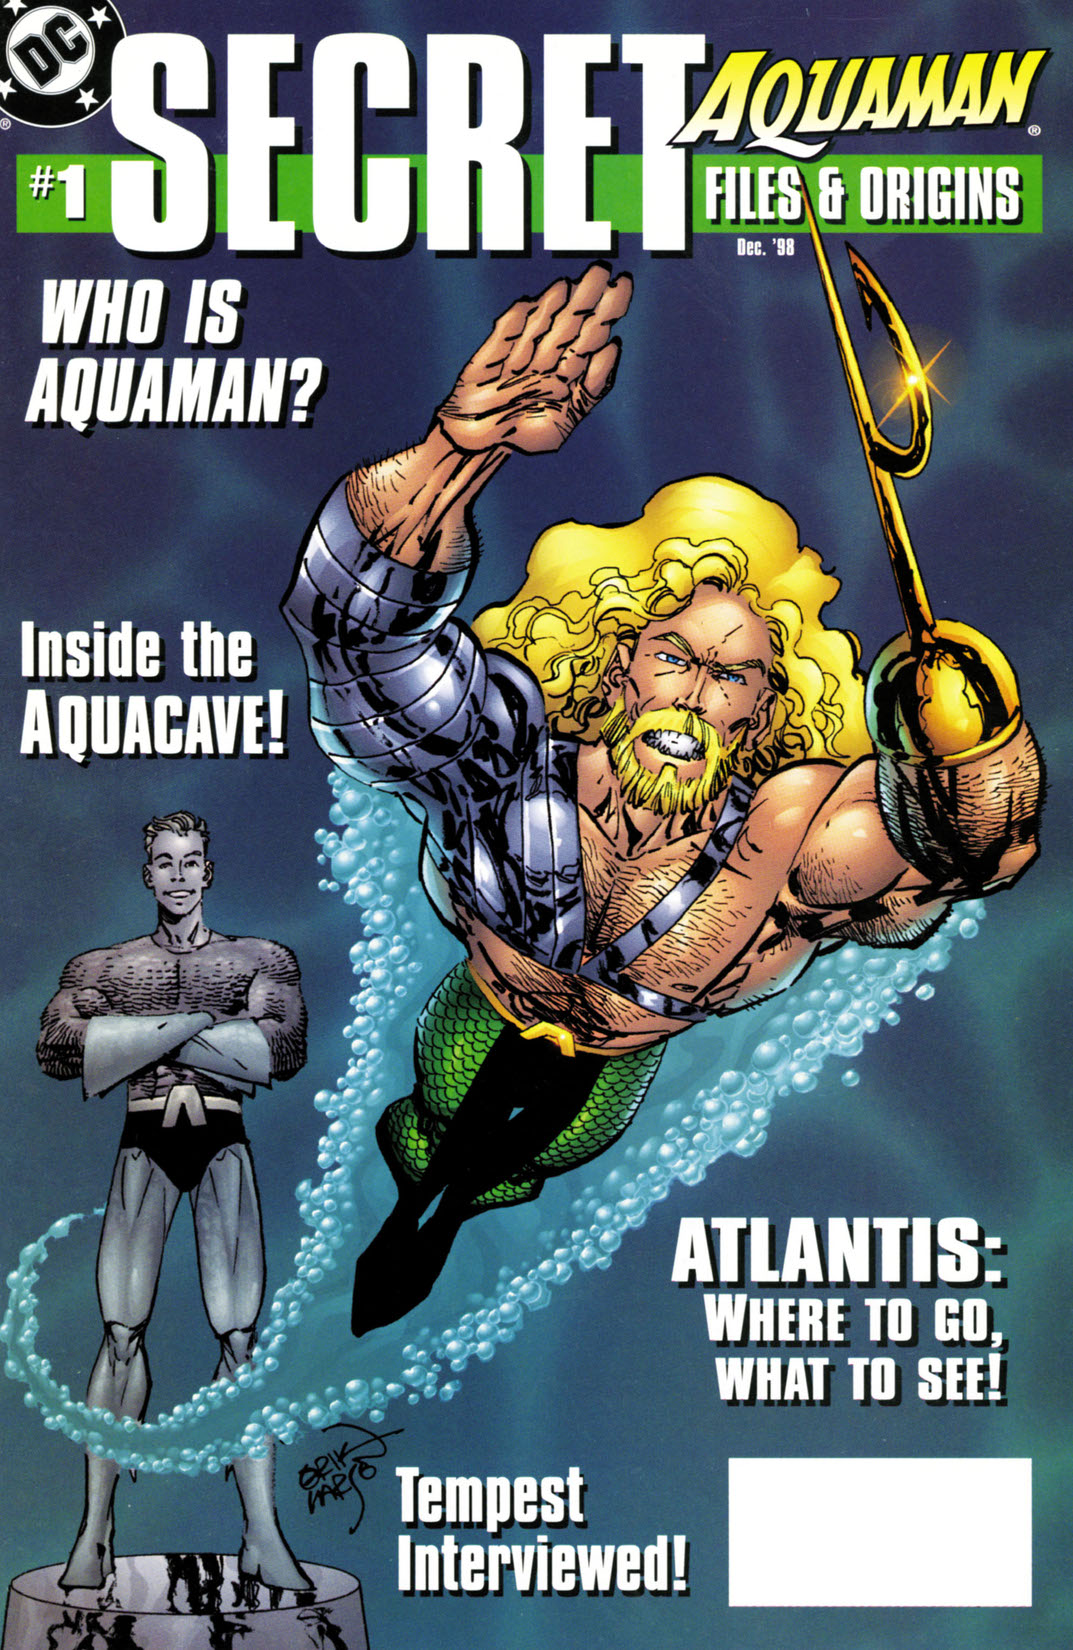 Aquaman Secret Files #1 preview images